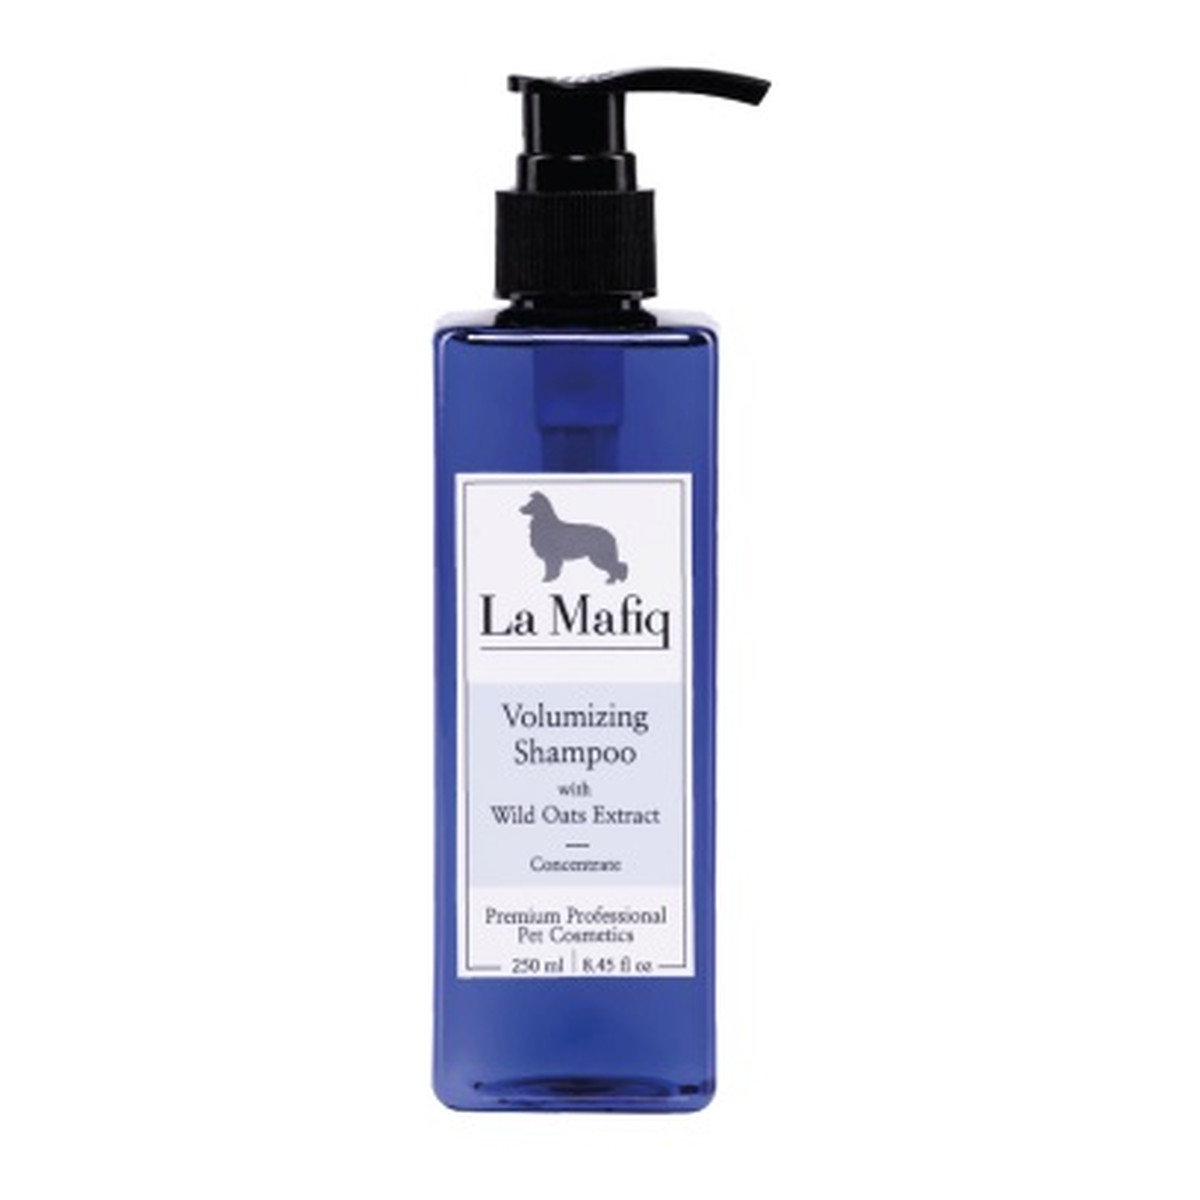 La Mafiq Volumizing Shampoo szampon zwiększający objętość z dzikim owsem 250ml